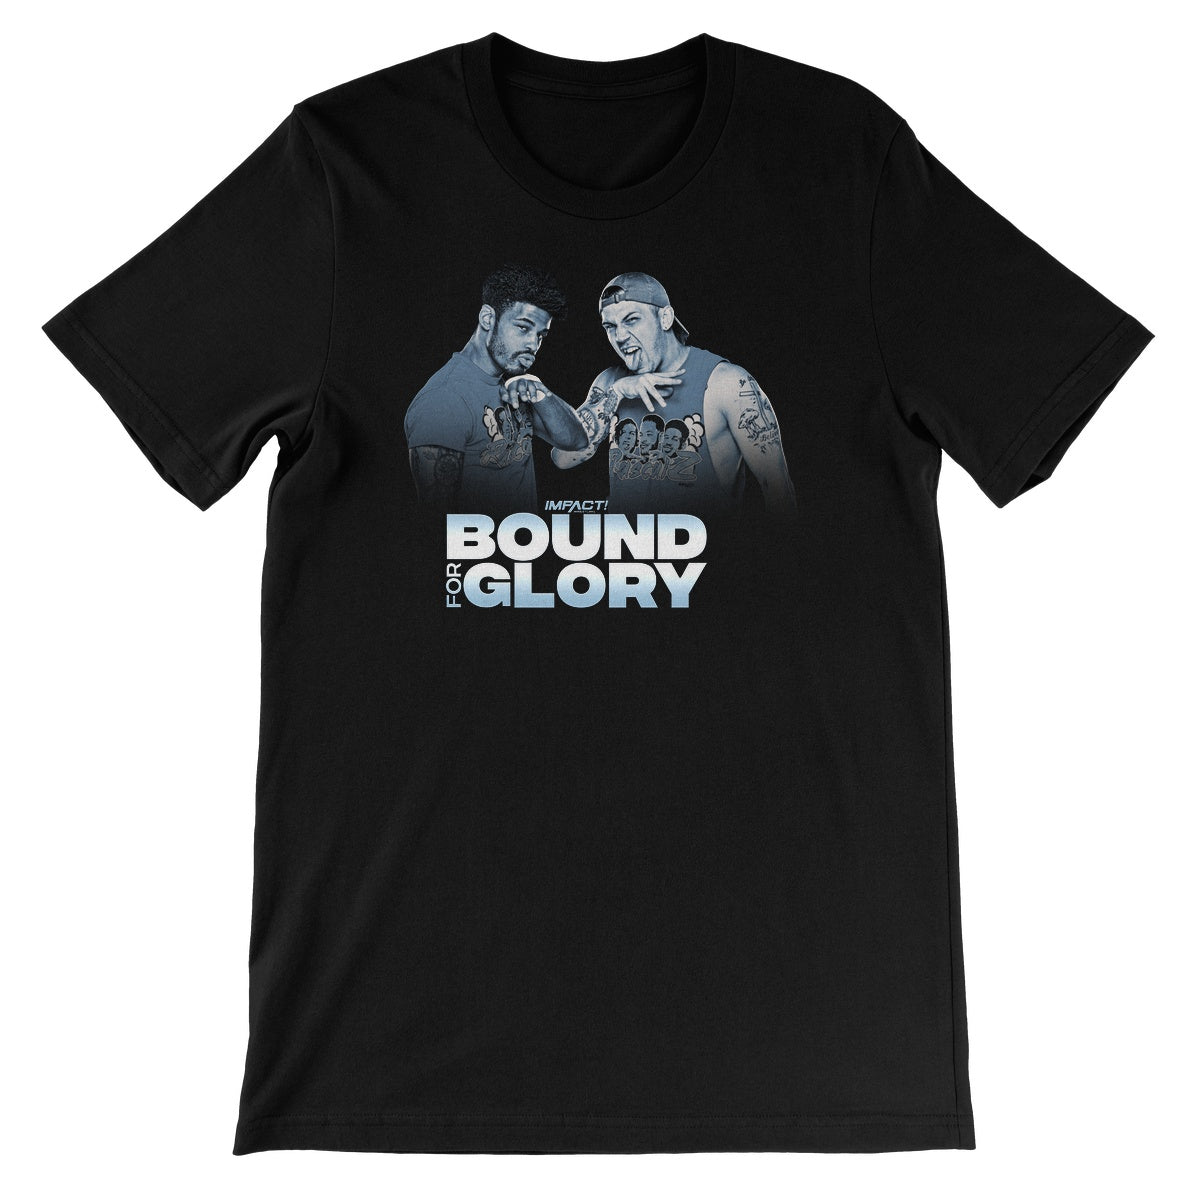 Bound For Glory 2020 - Rascalz Unisex Short Sleeve T-Shirt